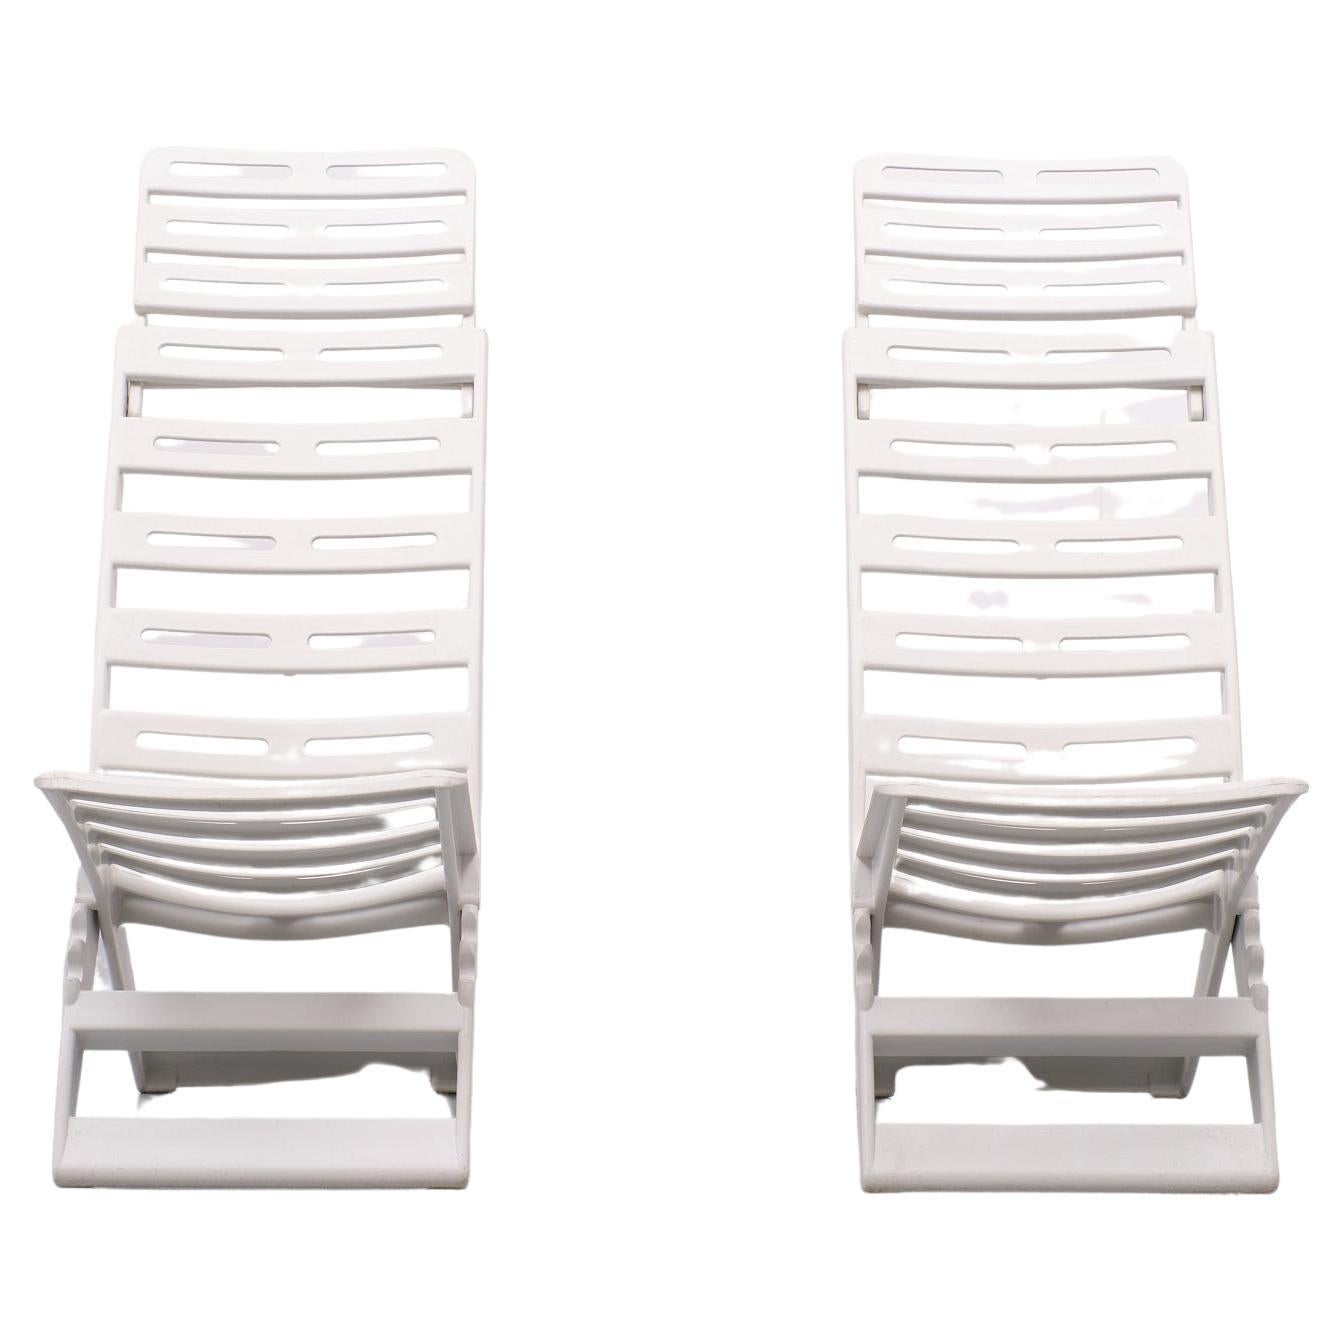 Deux chaises design pliantes en plastique (type Maratea) produites par le fabricant italien Fanini Foldes (Ascoli Piceno).
Convient pour un usage intérieur et extérieur, pour le jardin et la tente.
Elegant, pratique, confortable, très solide, facile